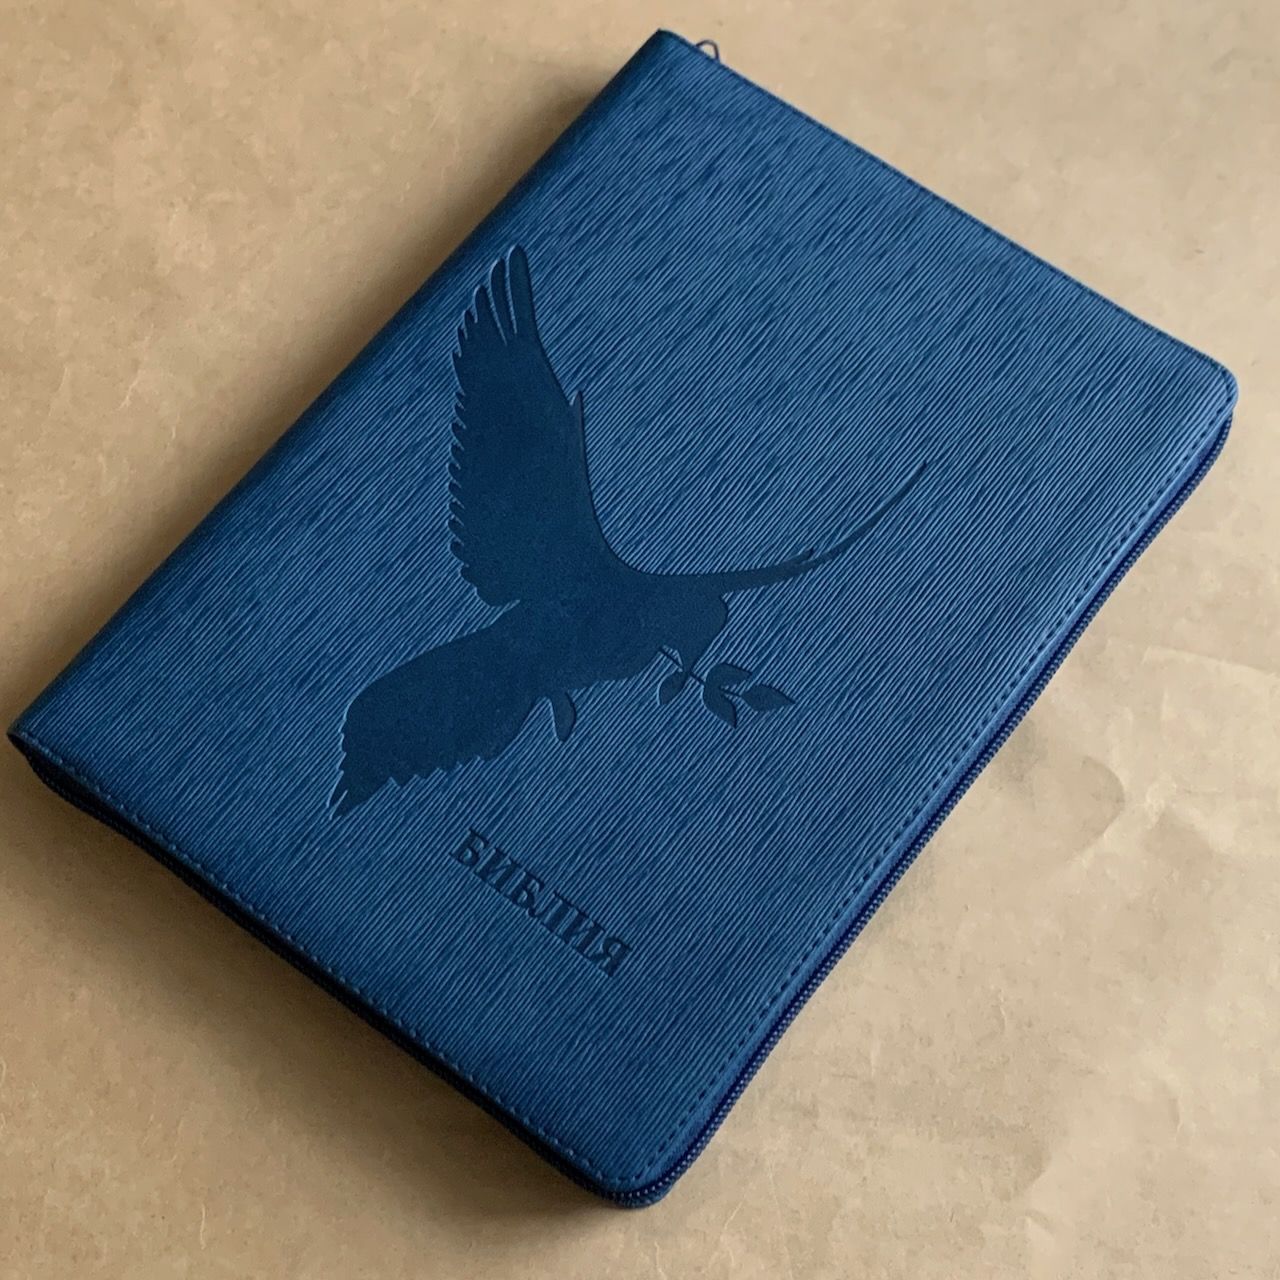 Библия 076z код F3, дизайн "голубь", переплет из искусственной кожи на молнии, цвет синий ребристый, размер 180x243 мм